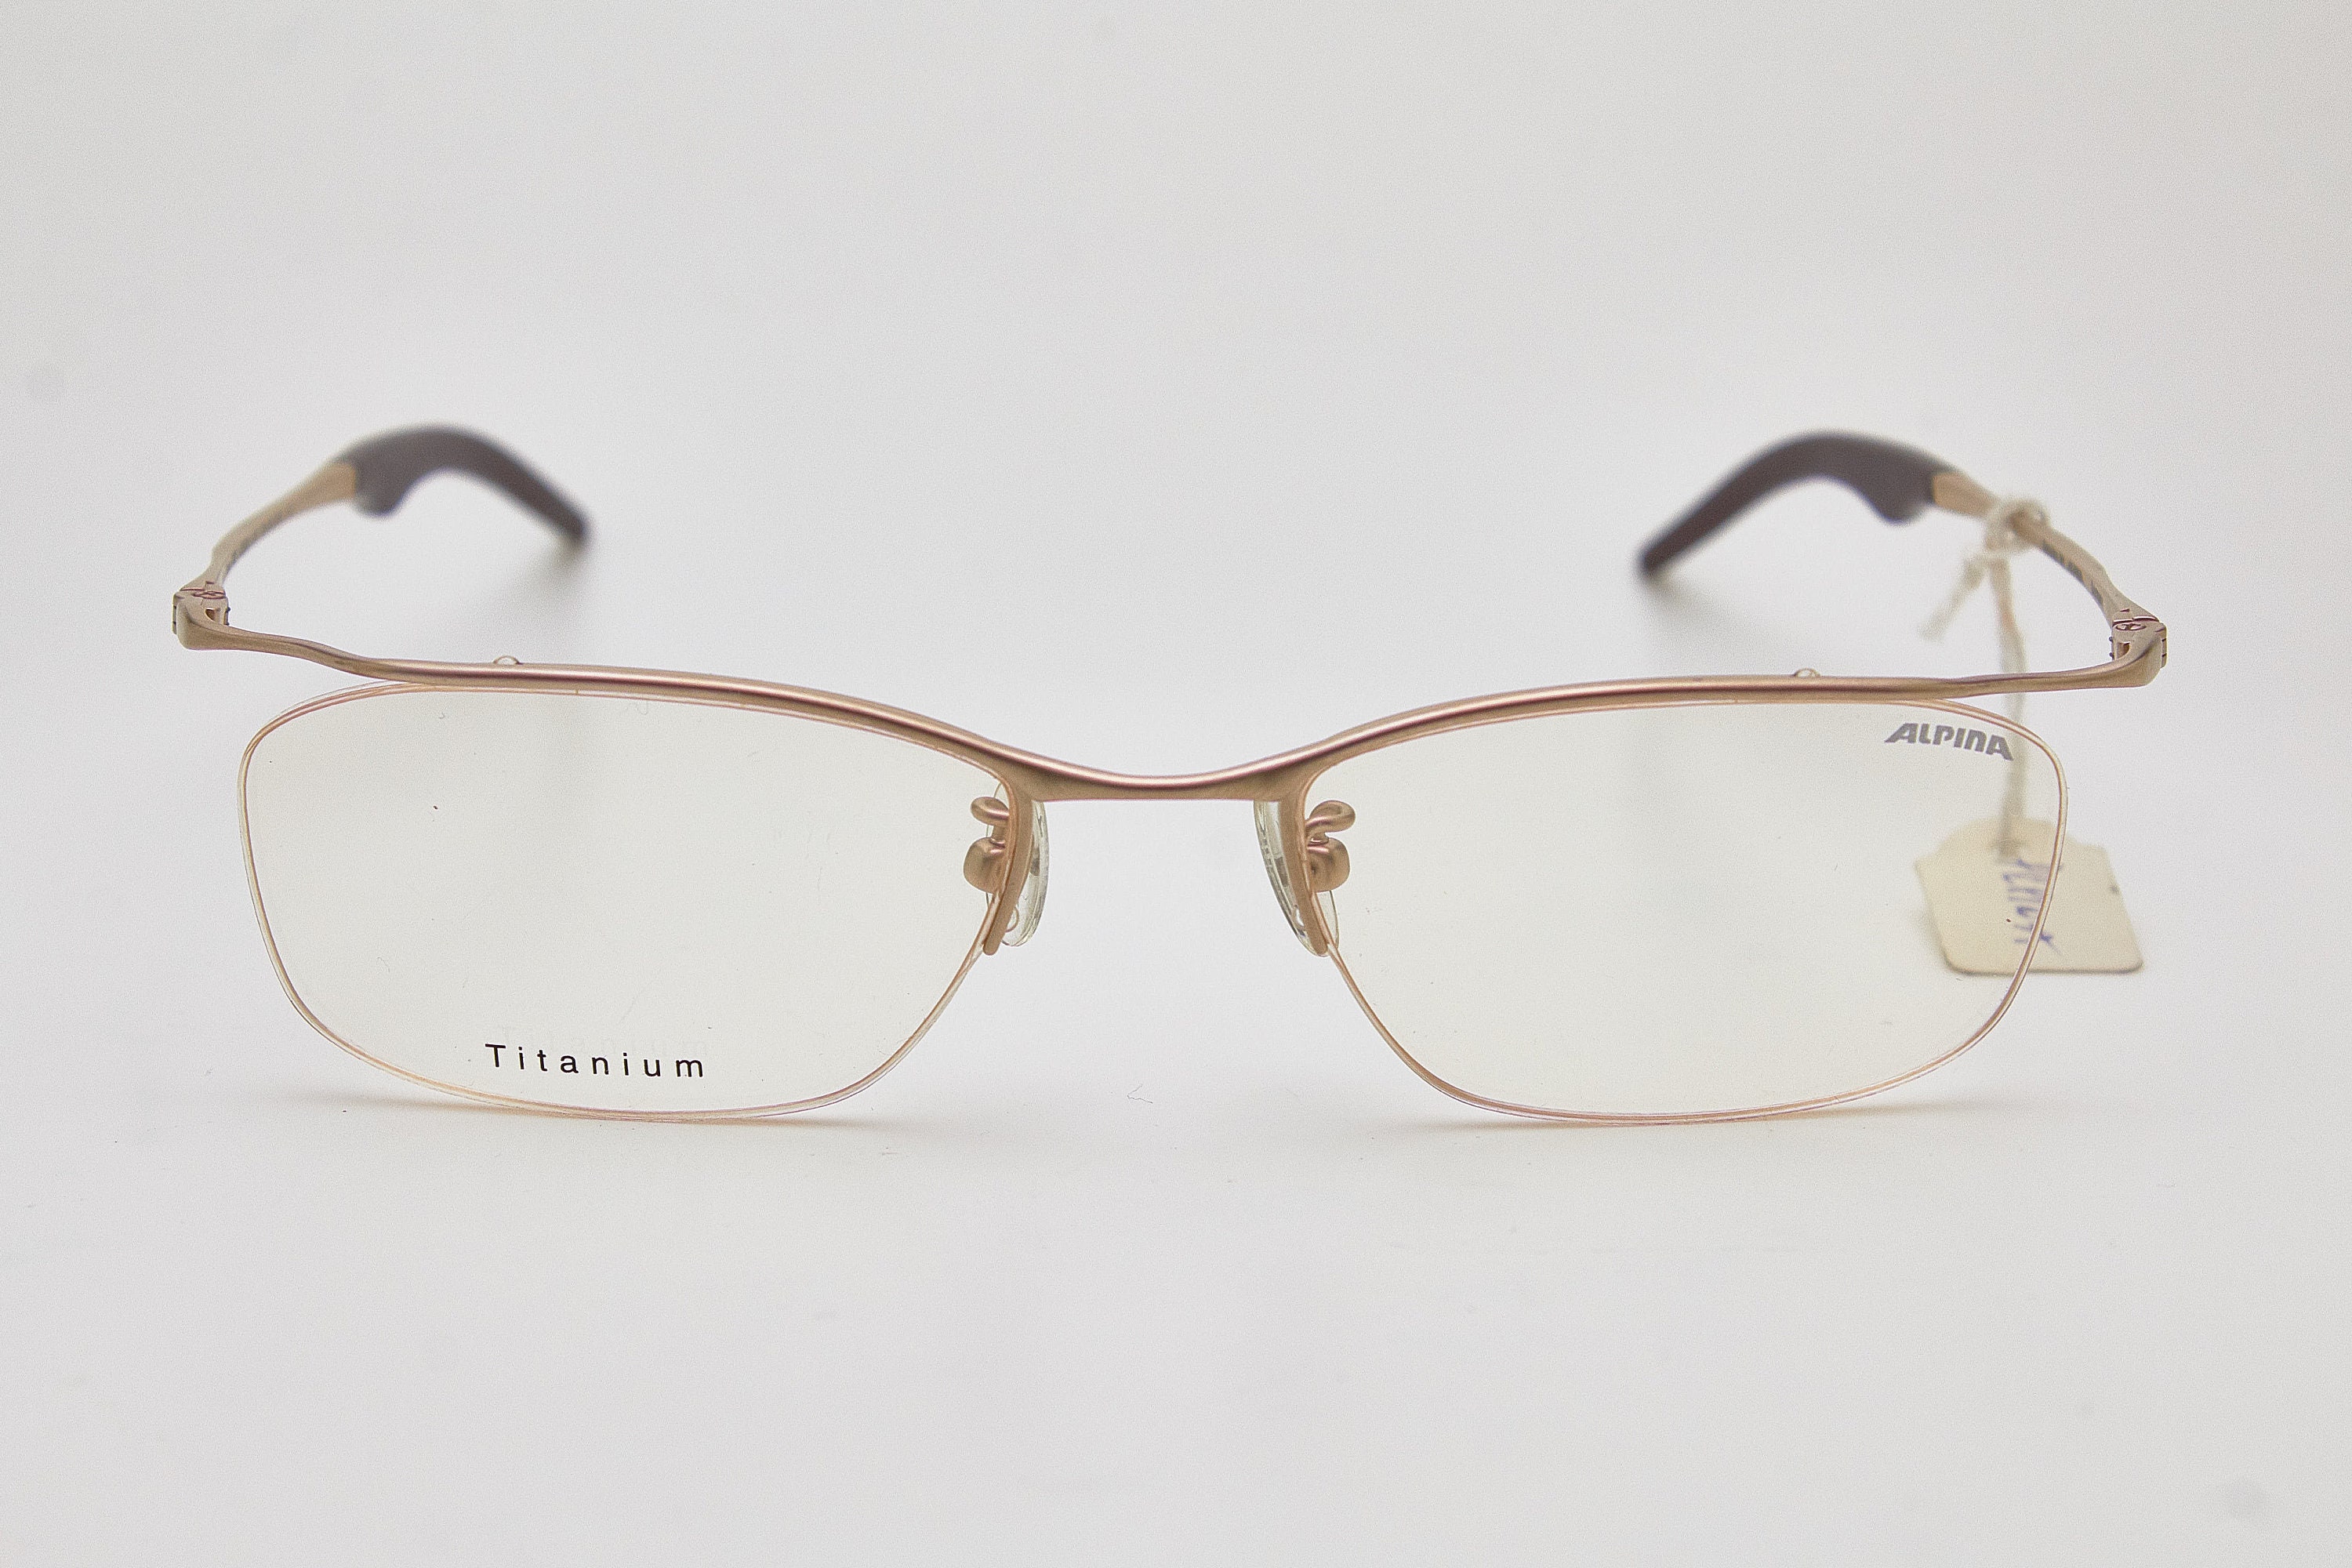 Vintage Glasses ALPINA M1 Titan F02 Sport Rare Titanium Half | Etsy